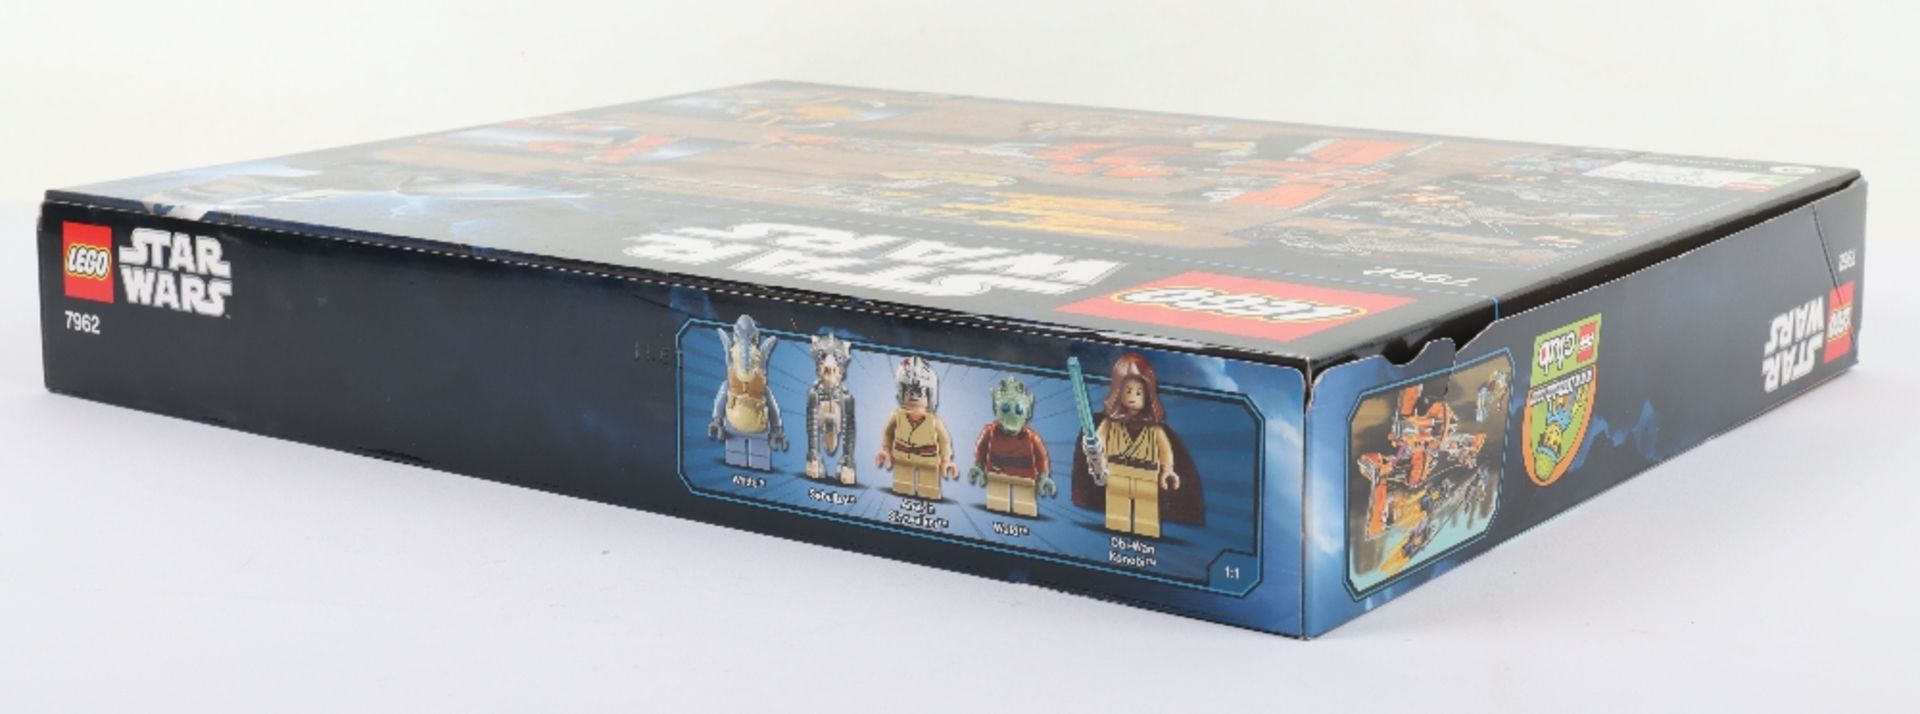 Lego Star Wars 7962 Anakin’s & Sebulba’s Podracers sealed boxed set - Image 4 of 7